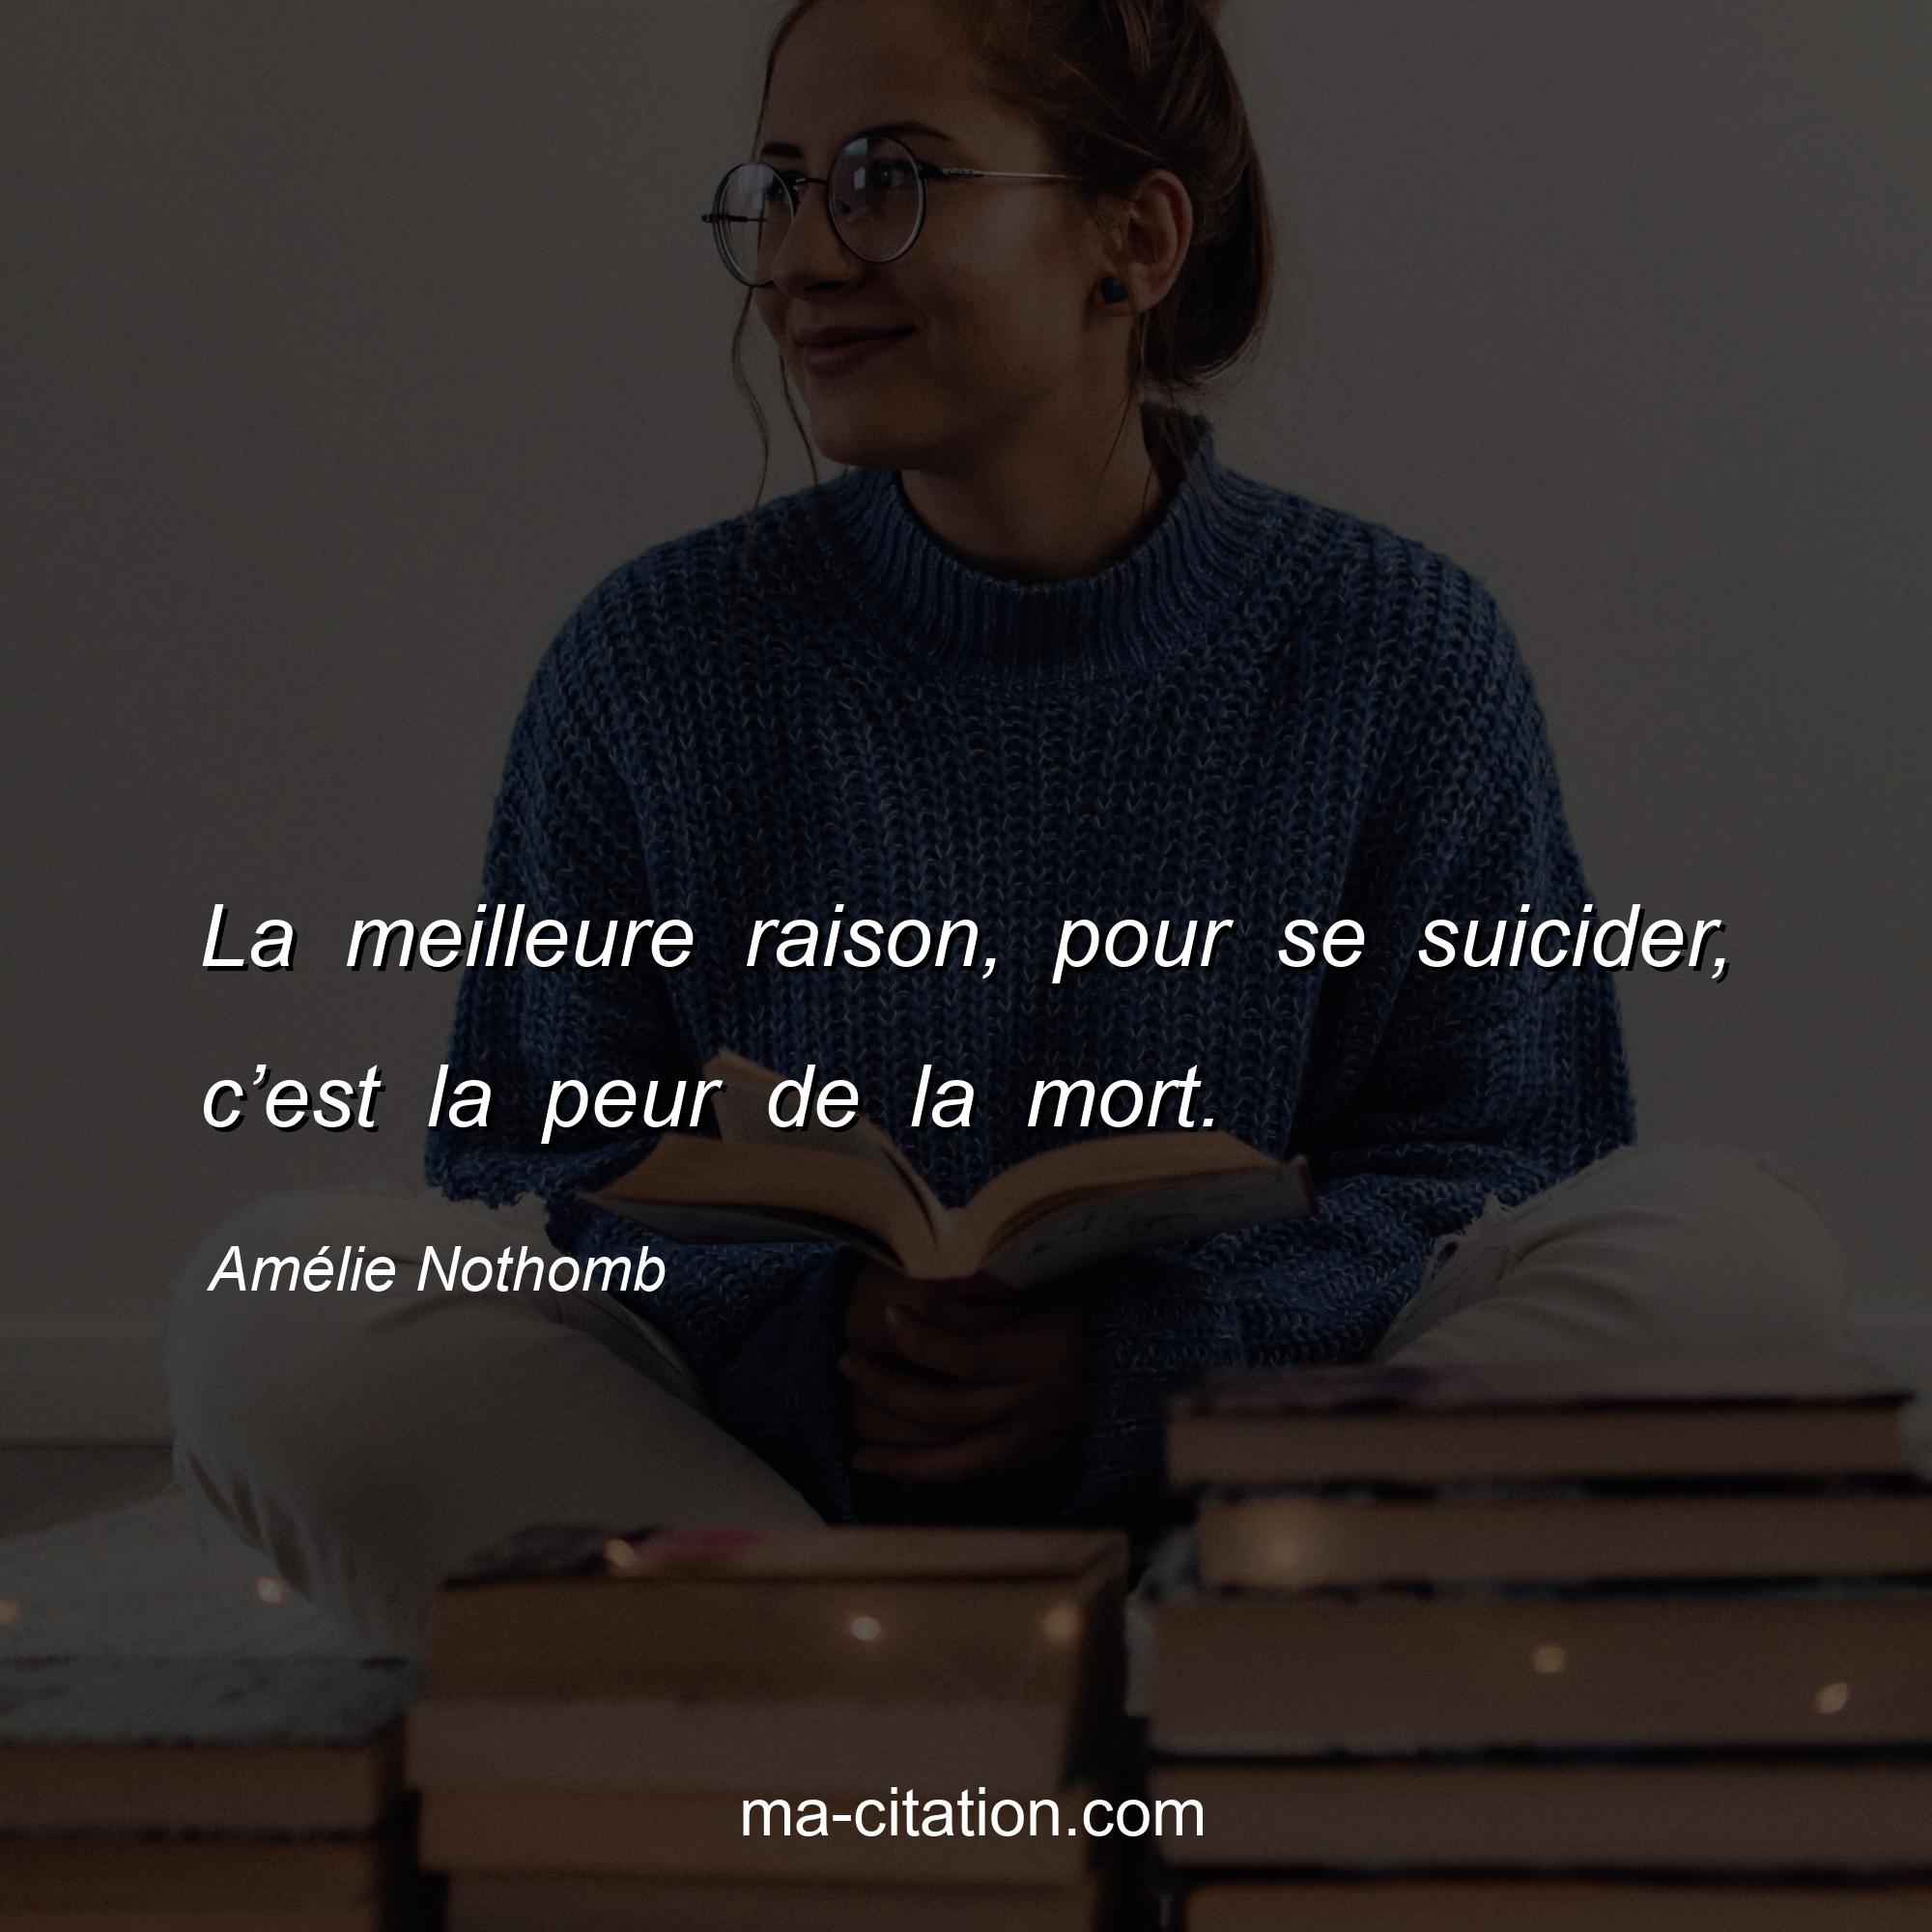 Amélie Nothomb : La meilleure raison, pour se suicider, c’est la peur de la mort.